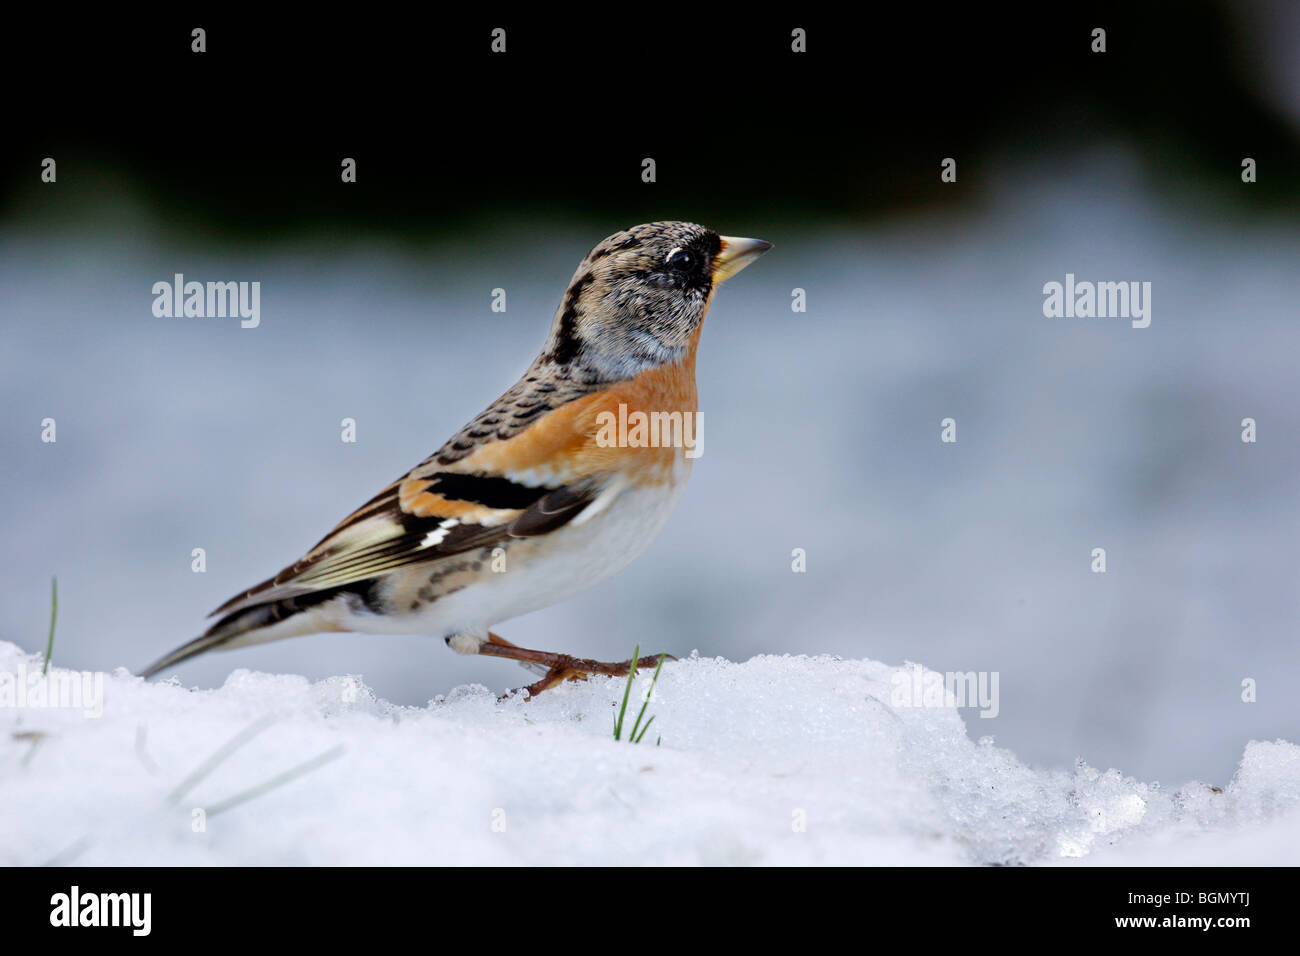 Brambling (Fringilla montifringilla) in the snow, Belgium Stock Photo